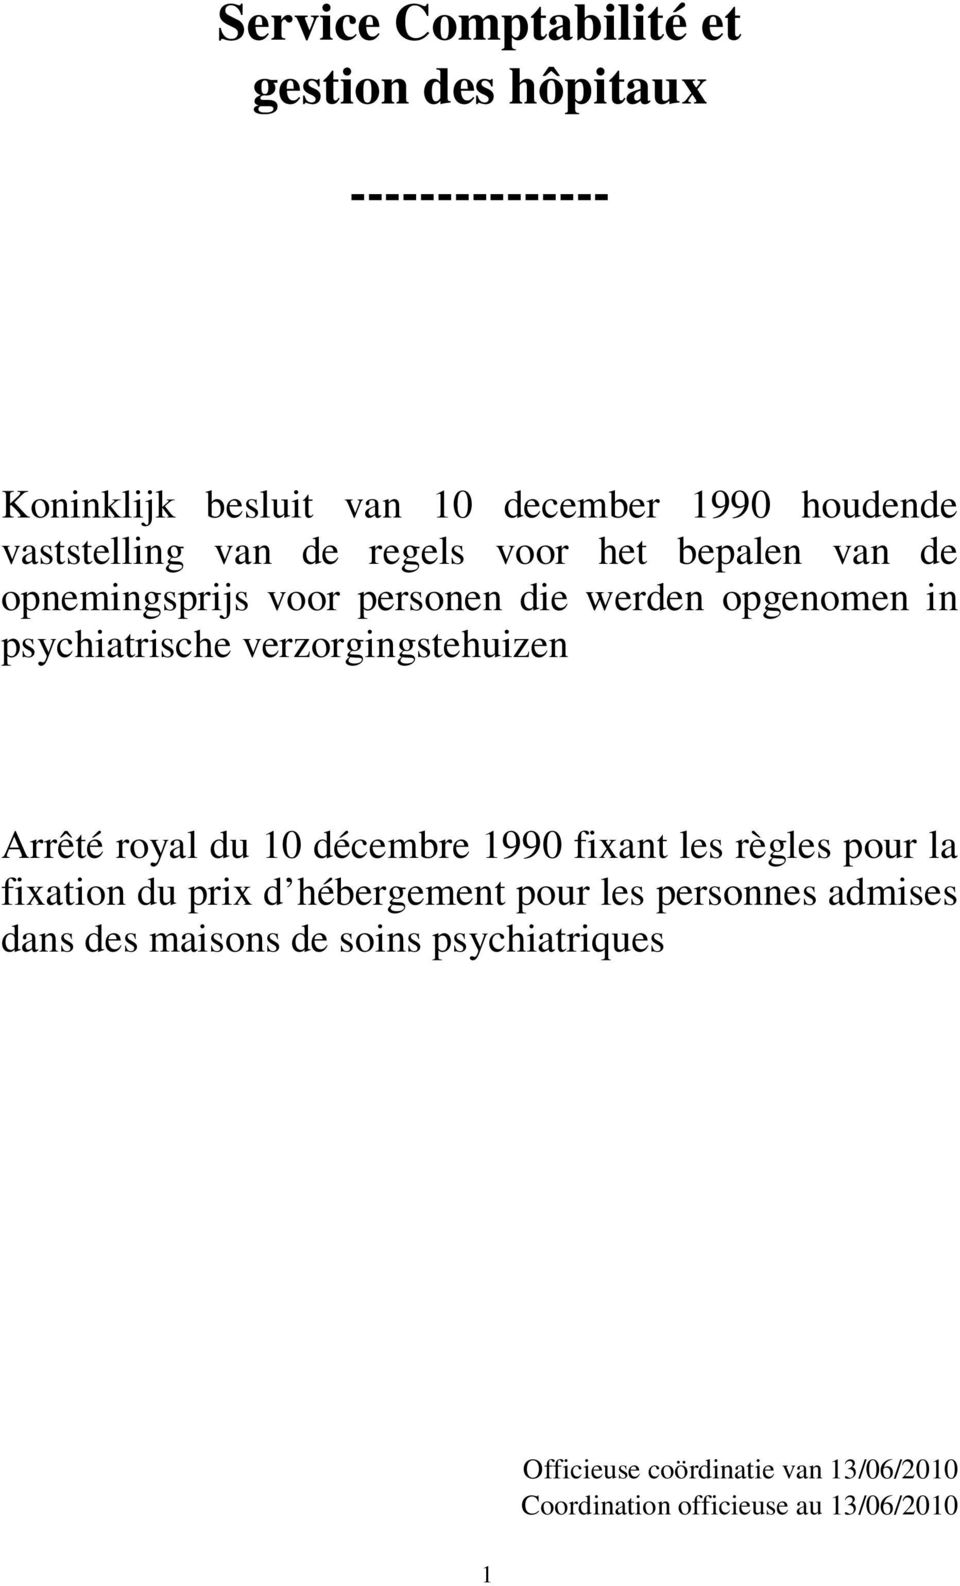 verzorgingstehuizen Arrêté royal du 10 décembre 1990 fixant les règles pour la fixation du prix d hébergement pour les